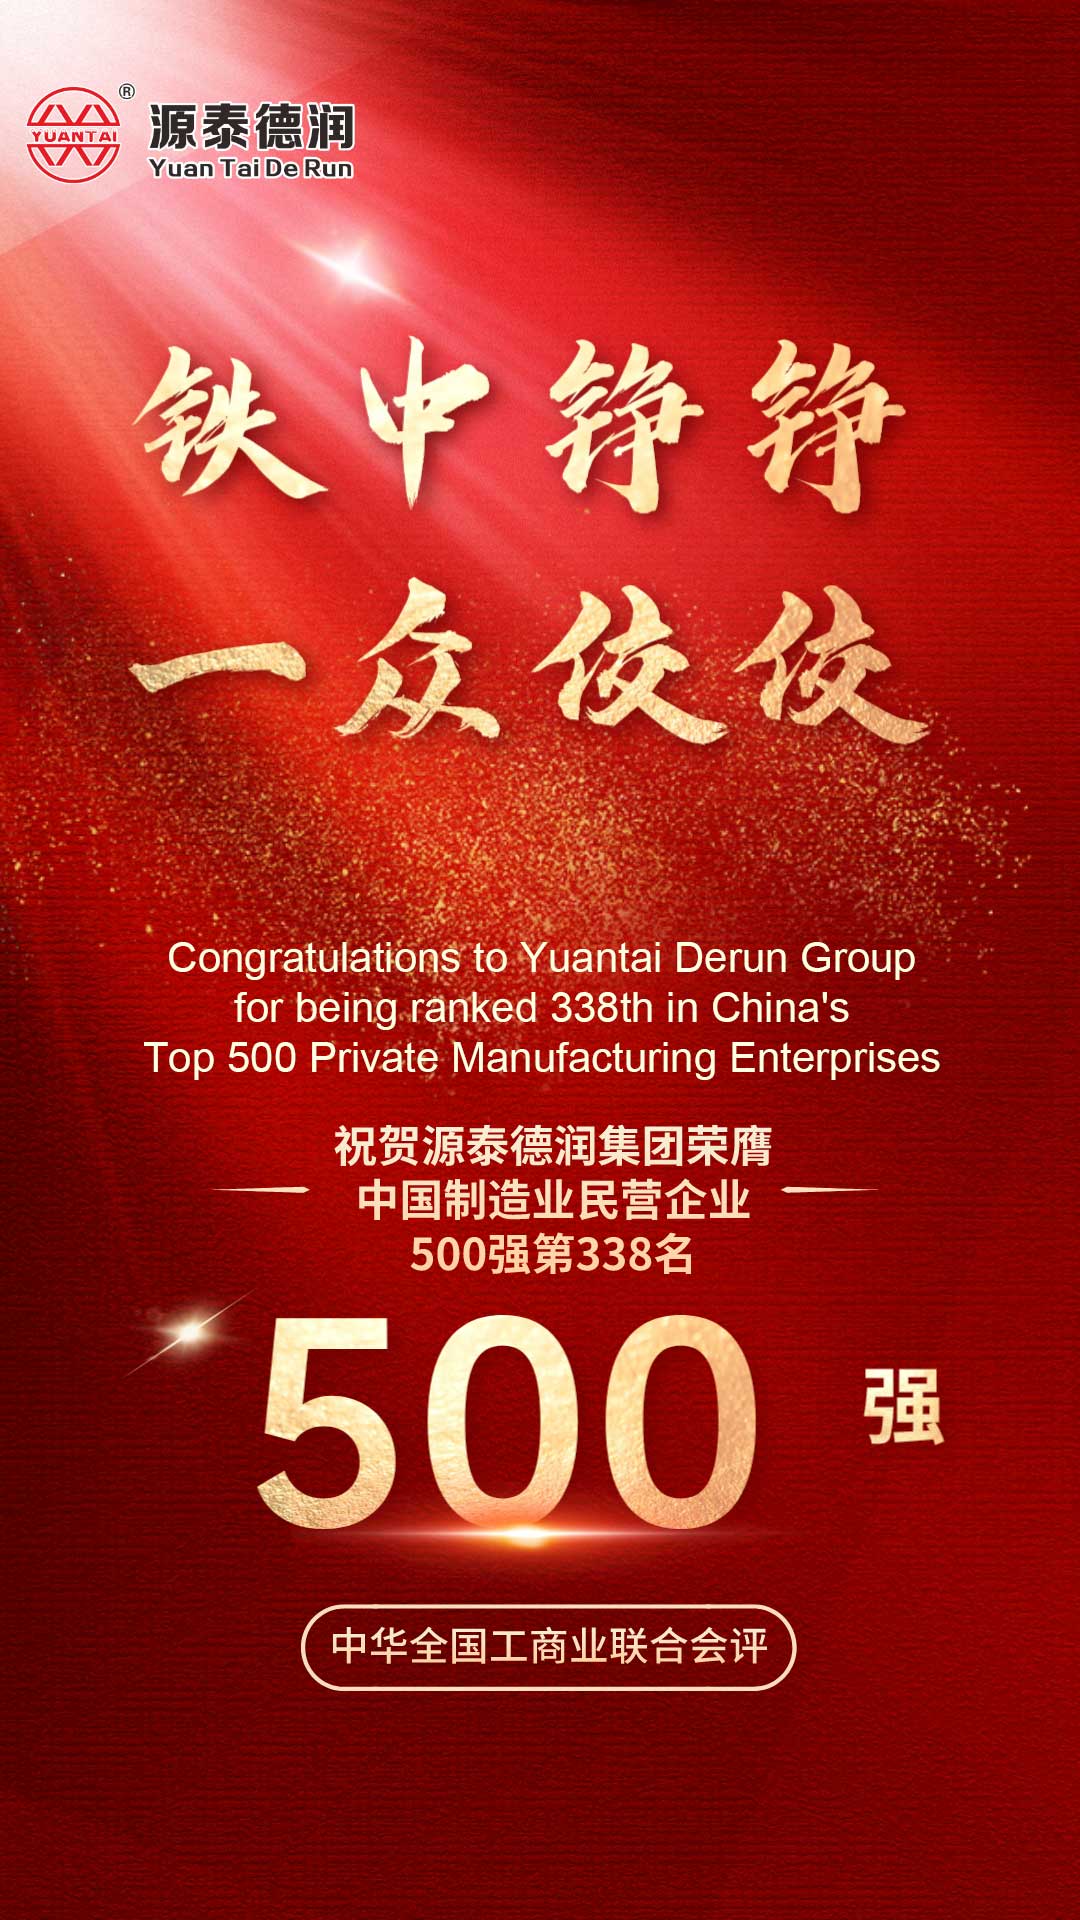 Շնորհավորում եմ:Tianjin Yuantai Derun Group-ը արժանացել է «2023 թվականի Չինաստանի արտադրության լավագույն 500 մասնավոր ձեռնարկությունների ցանկում» ցուցակագրվելու պատվին և զբաղեցրել 338-րդ տեղը: